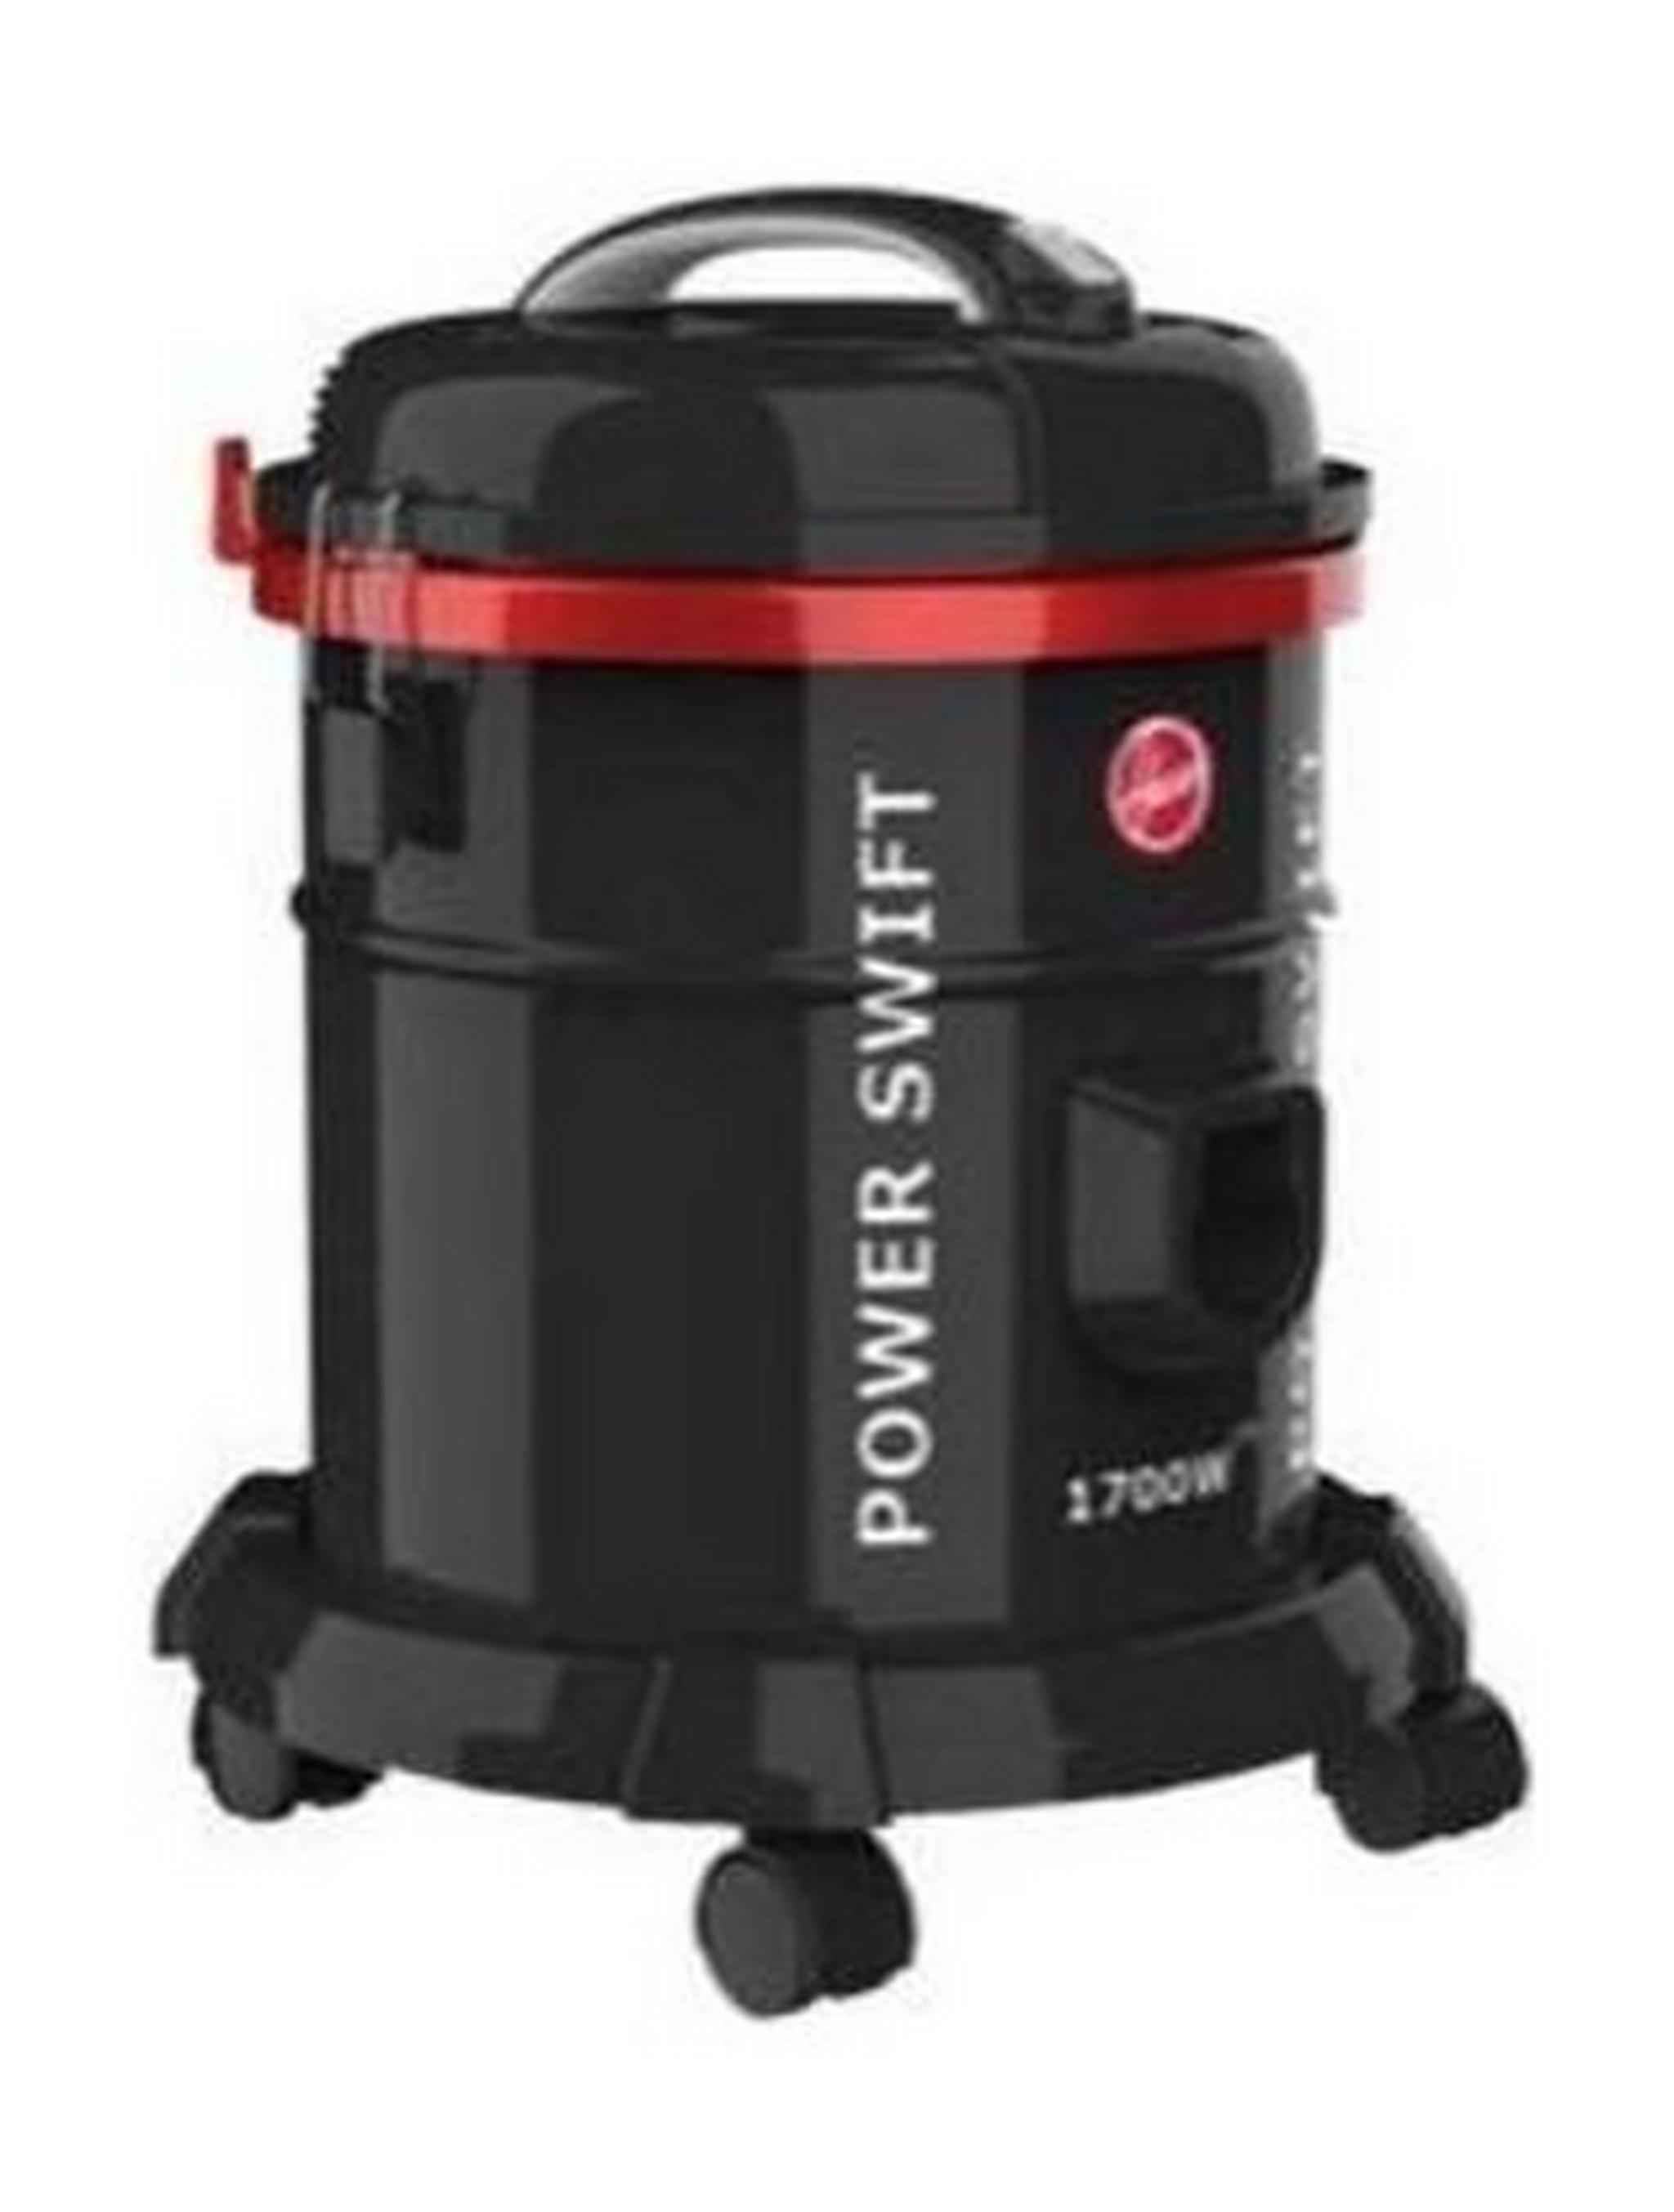 Hoover Power Swift Drum Vacuum Cleaner, 1700 W, 15 liters, HT85-T0-ME - Black